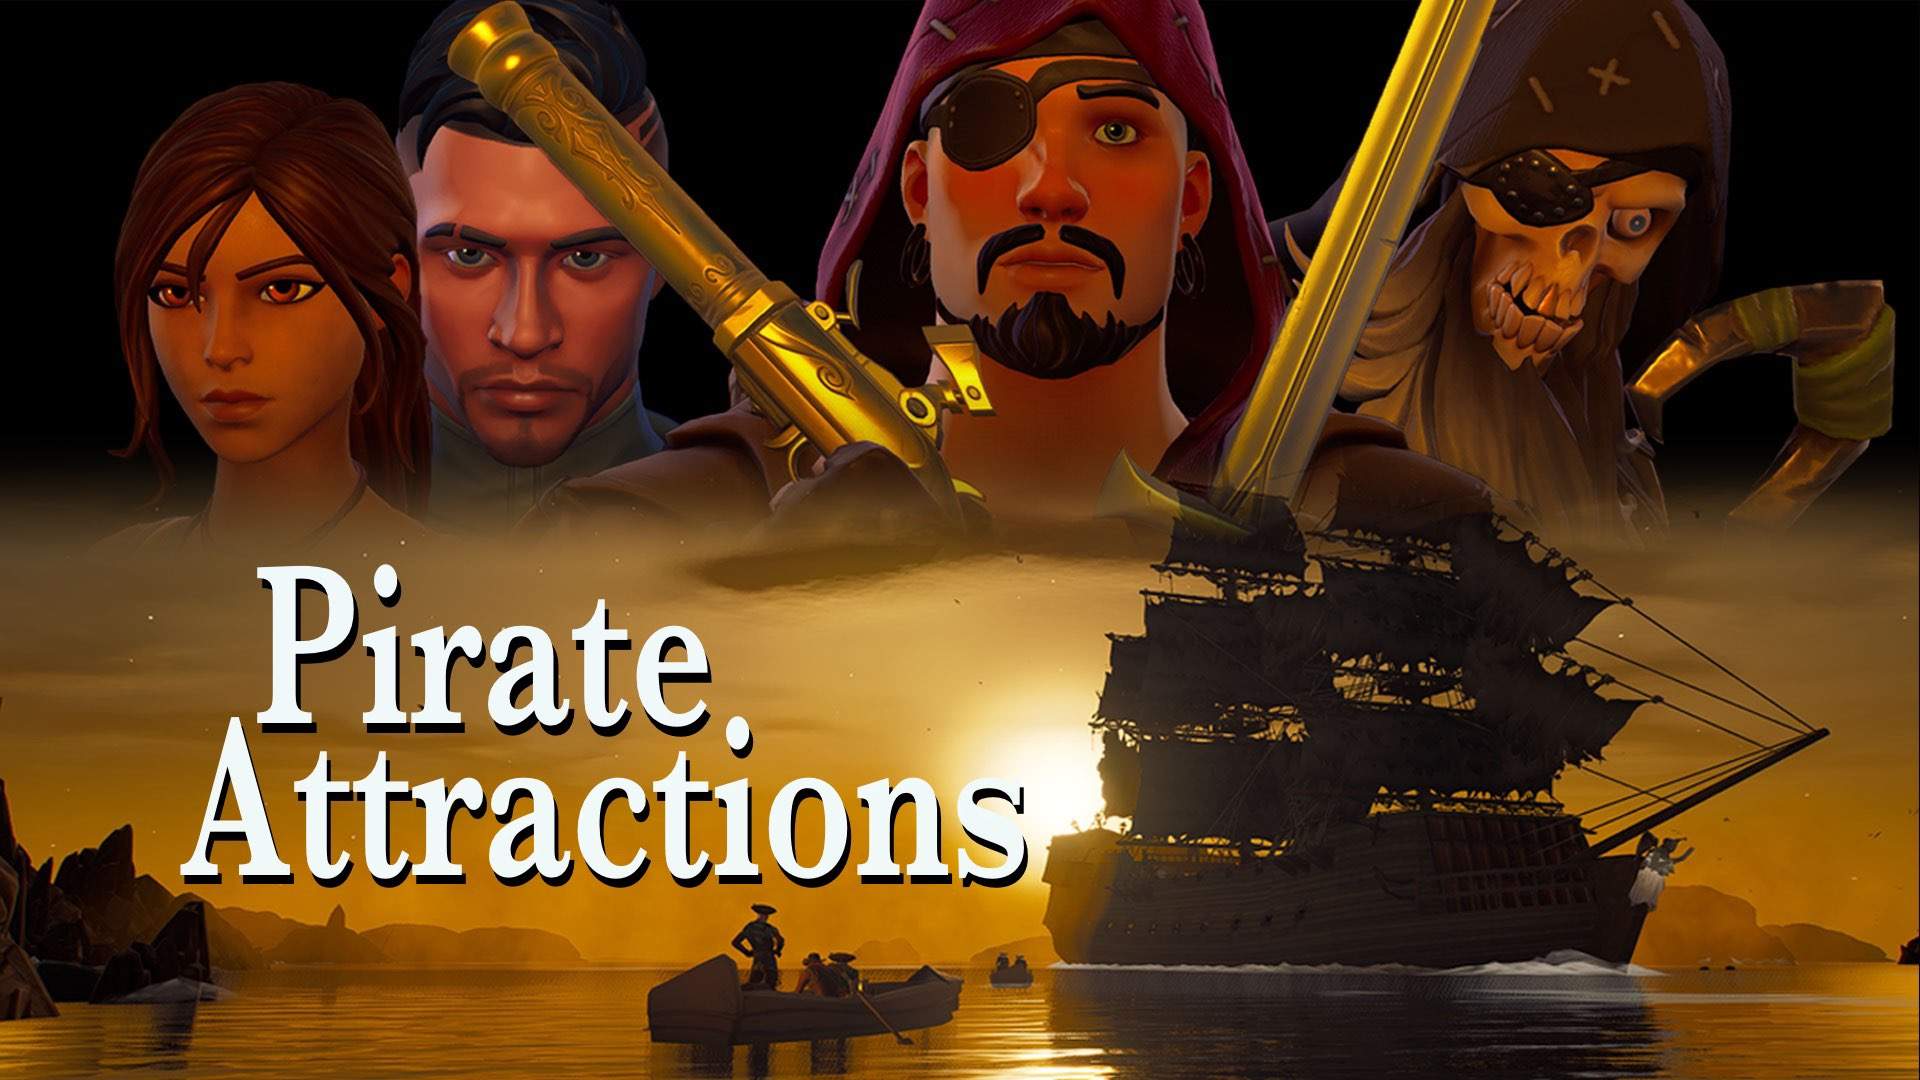 Escape Game - Pirates - Fortnite Creative Map Code - Dropnite